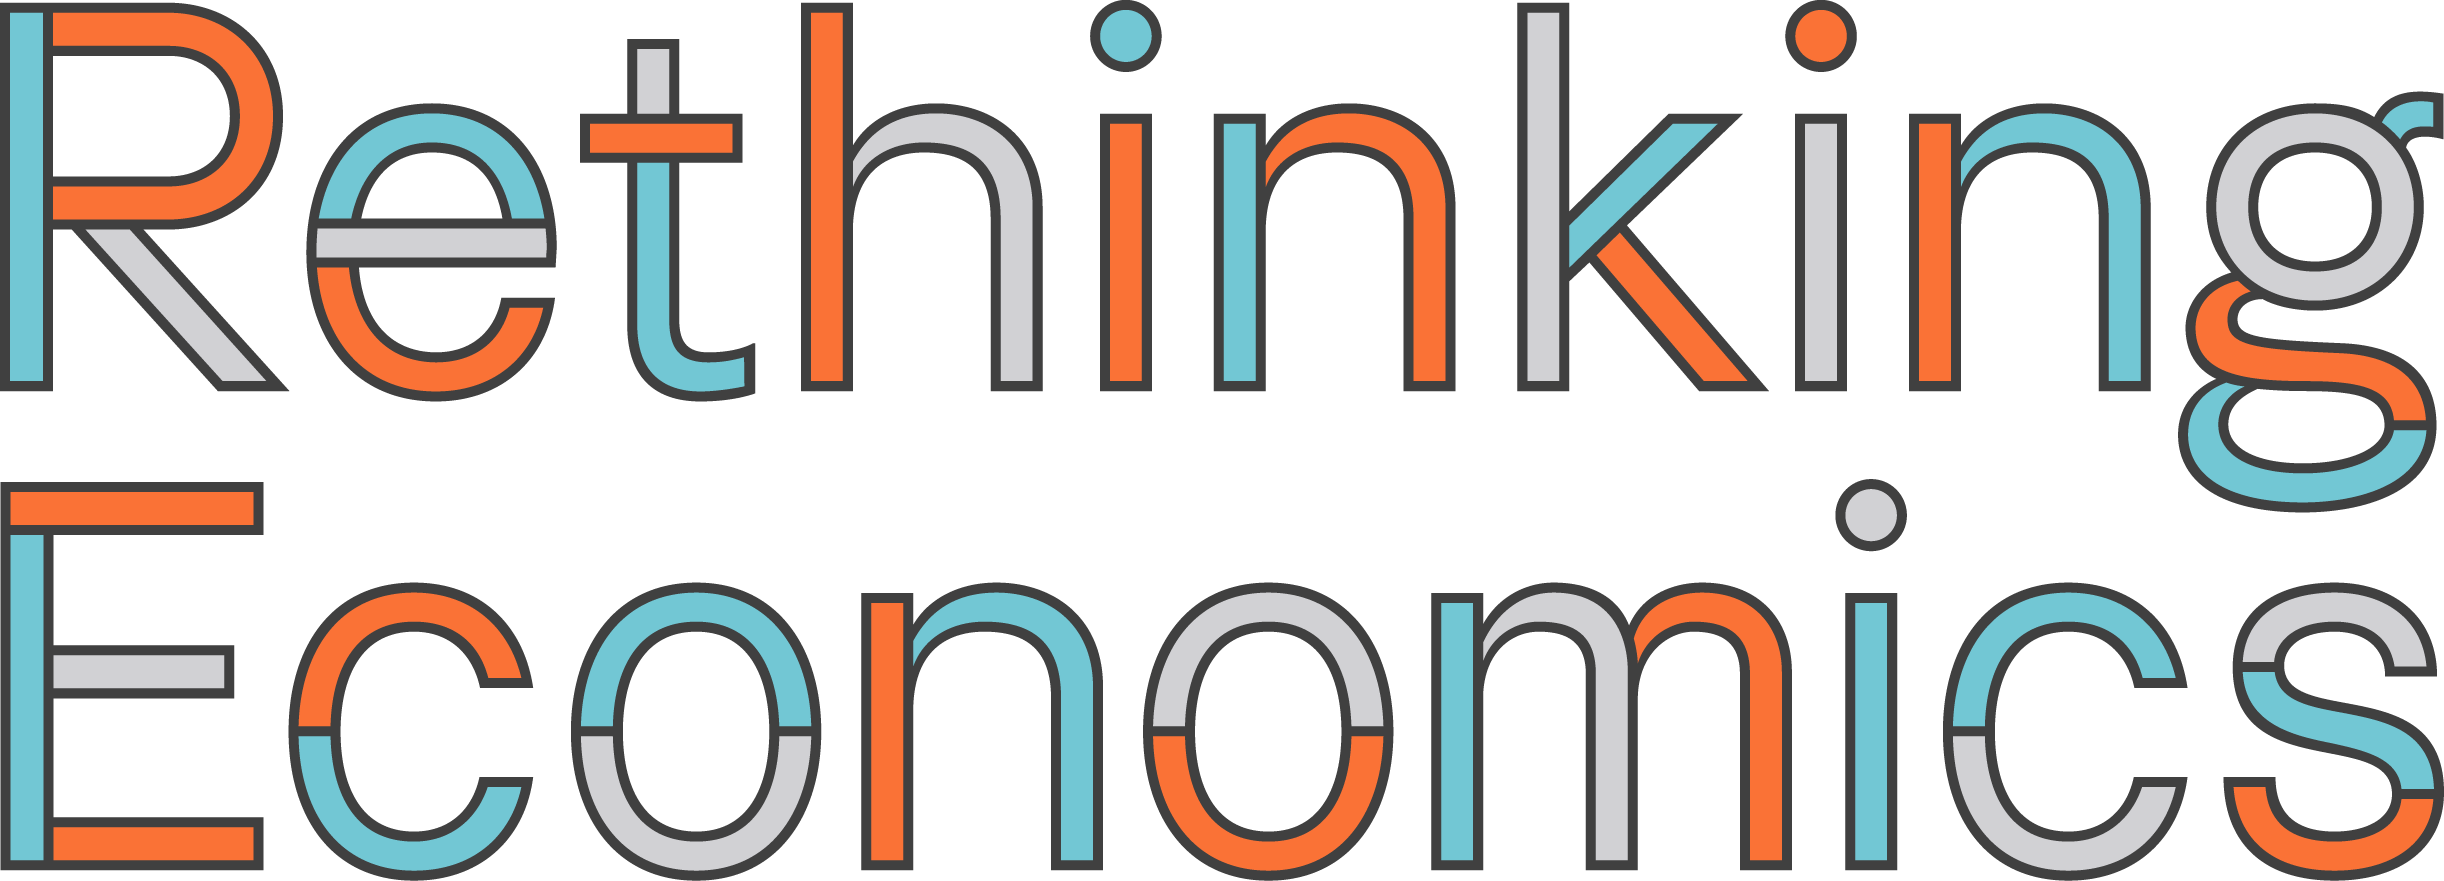 Economics Logo - Rethinking Economics - Rethinking-Logotype-Final-Digital_FULL LOGO